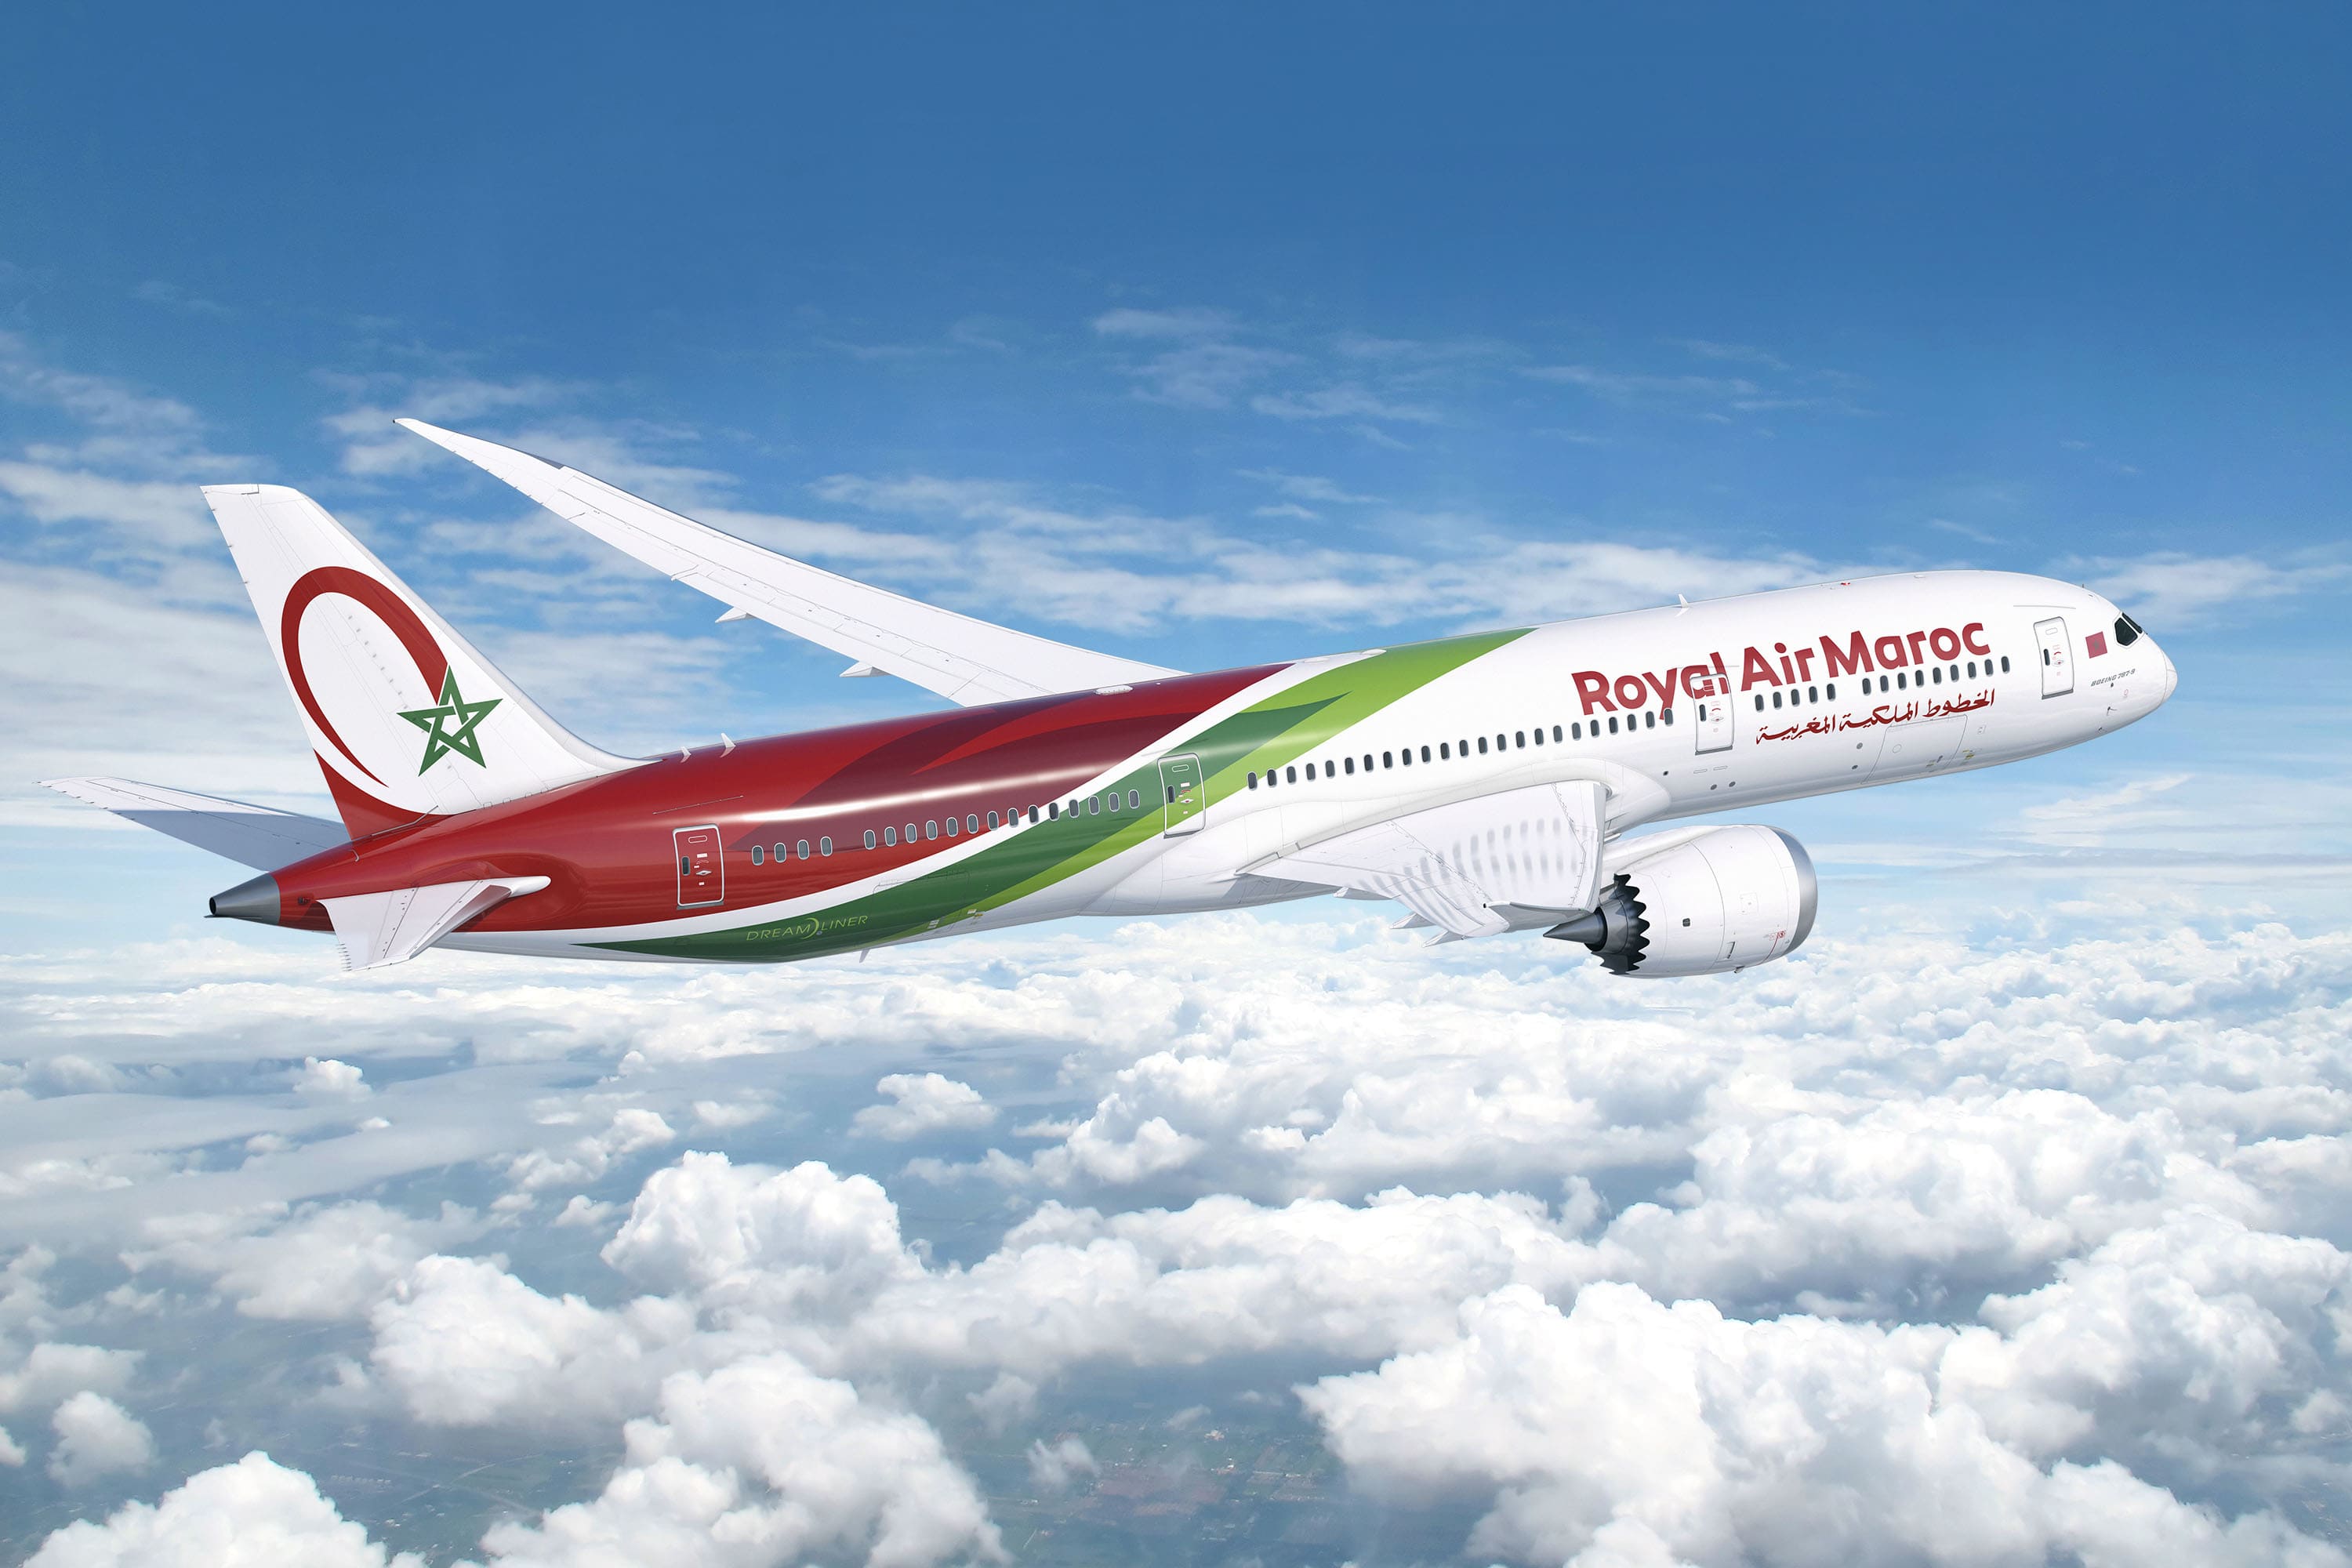 Royal Air Maroc uçuşlarında Safar Flyer Gold avantajları